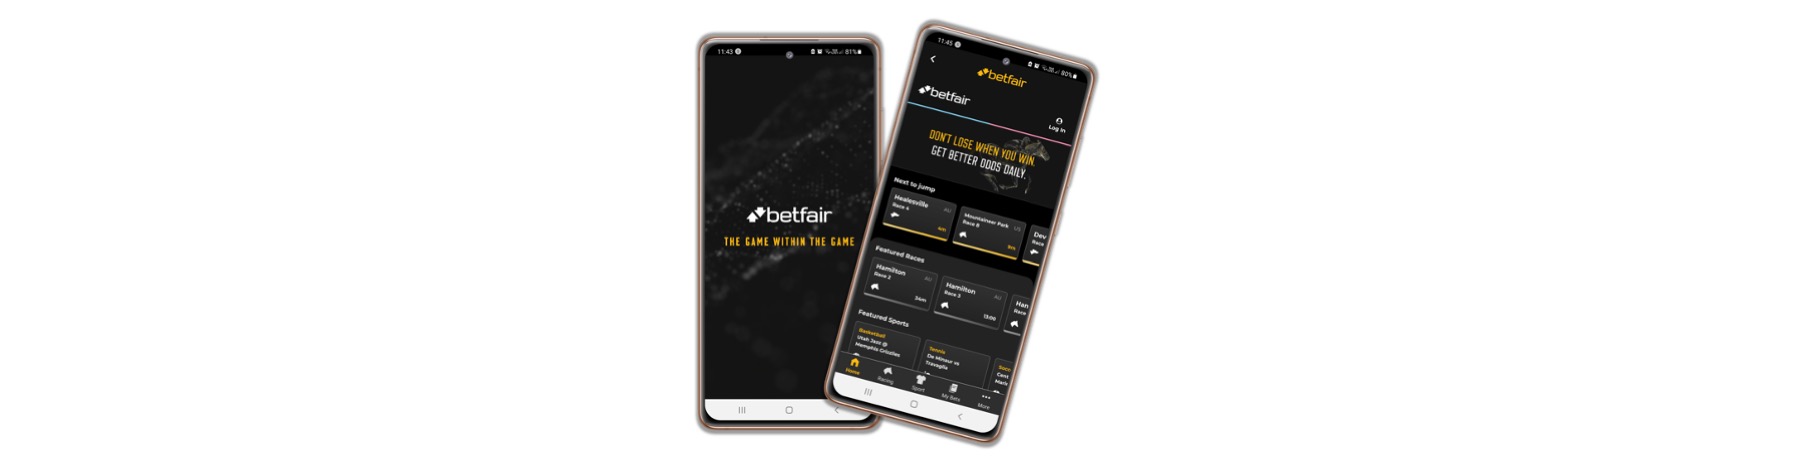 Betfair Betting App